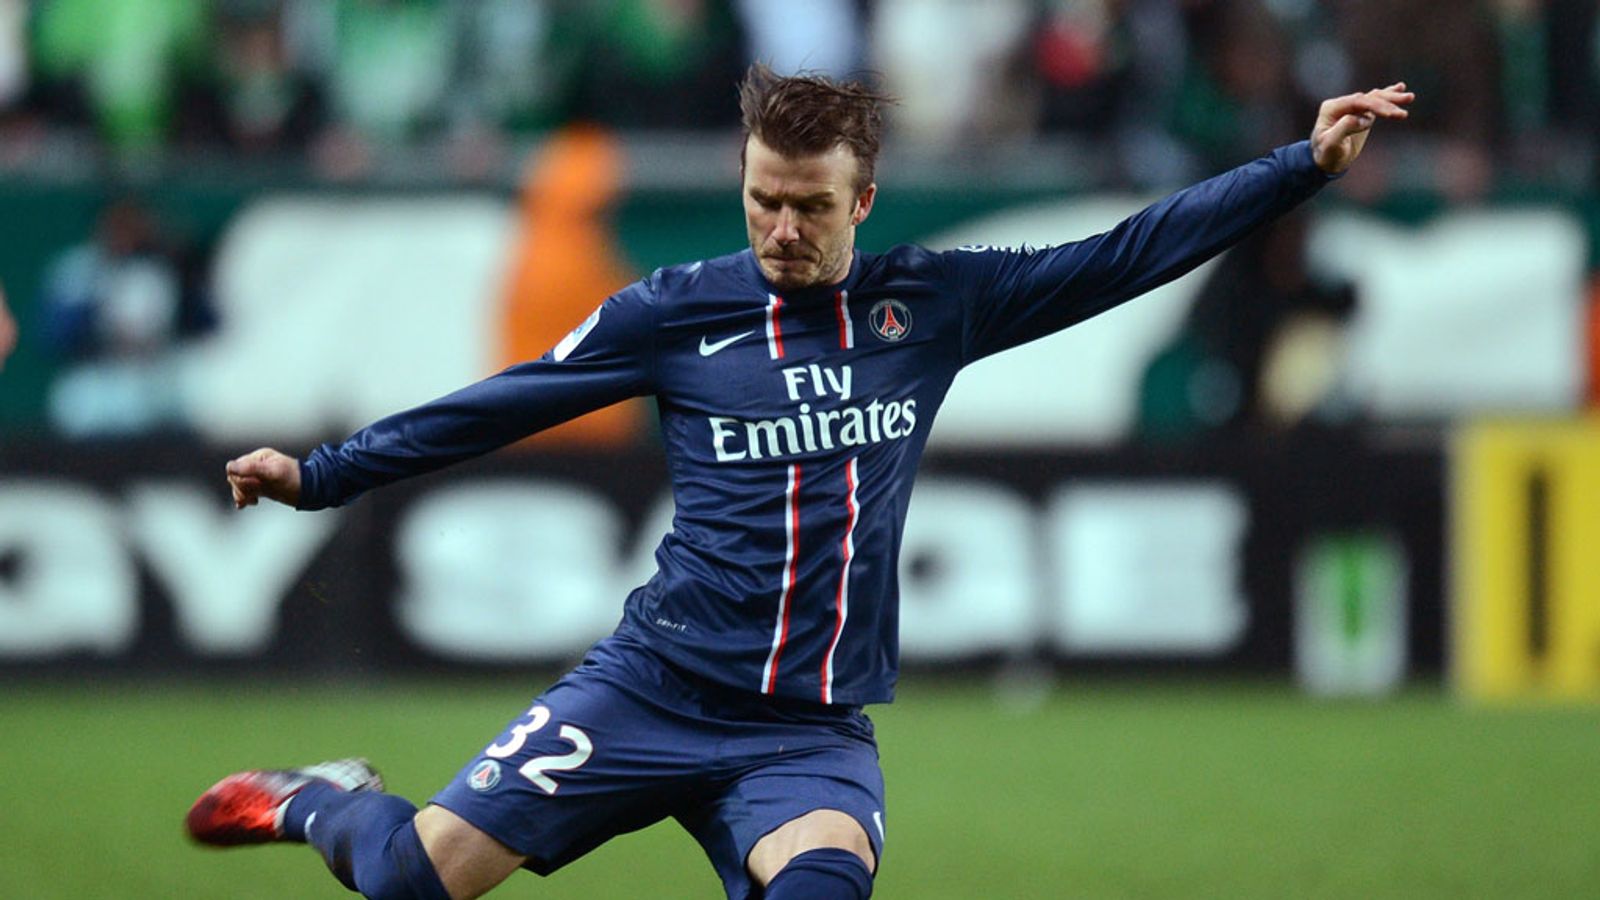 David Beckham to get PSG send off against Brest at the Parc des Princes